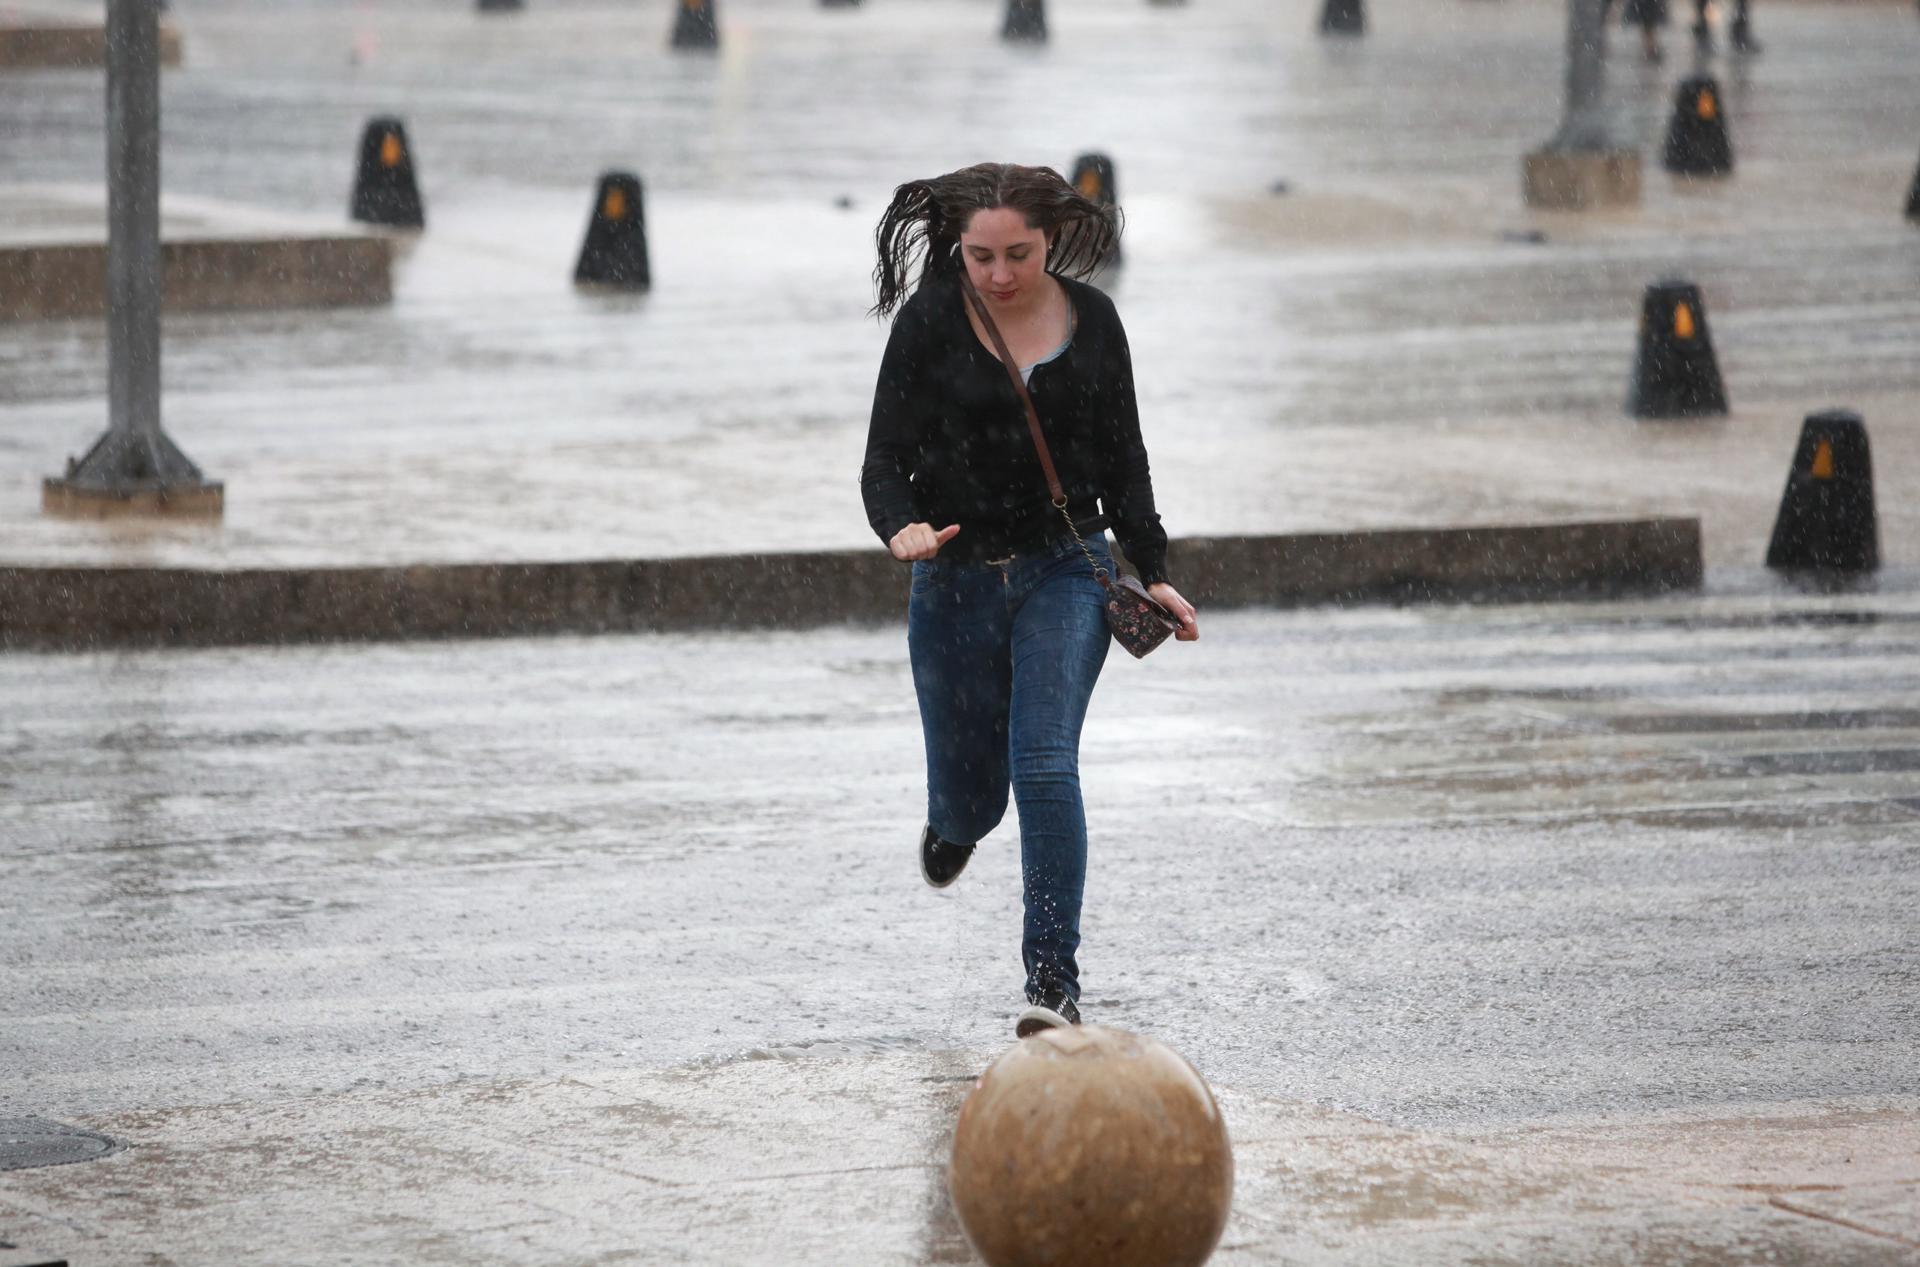 Imagen de archivo de una mujer que camina bajo las intensas lluvias en Ciudad de México (México). EFE/Sáshenka Gutiérrez